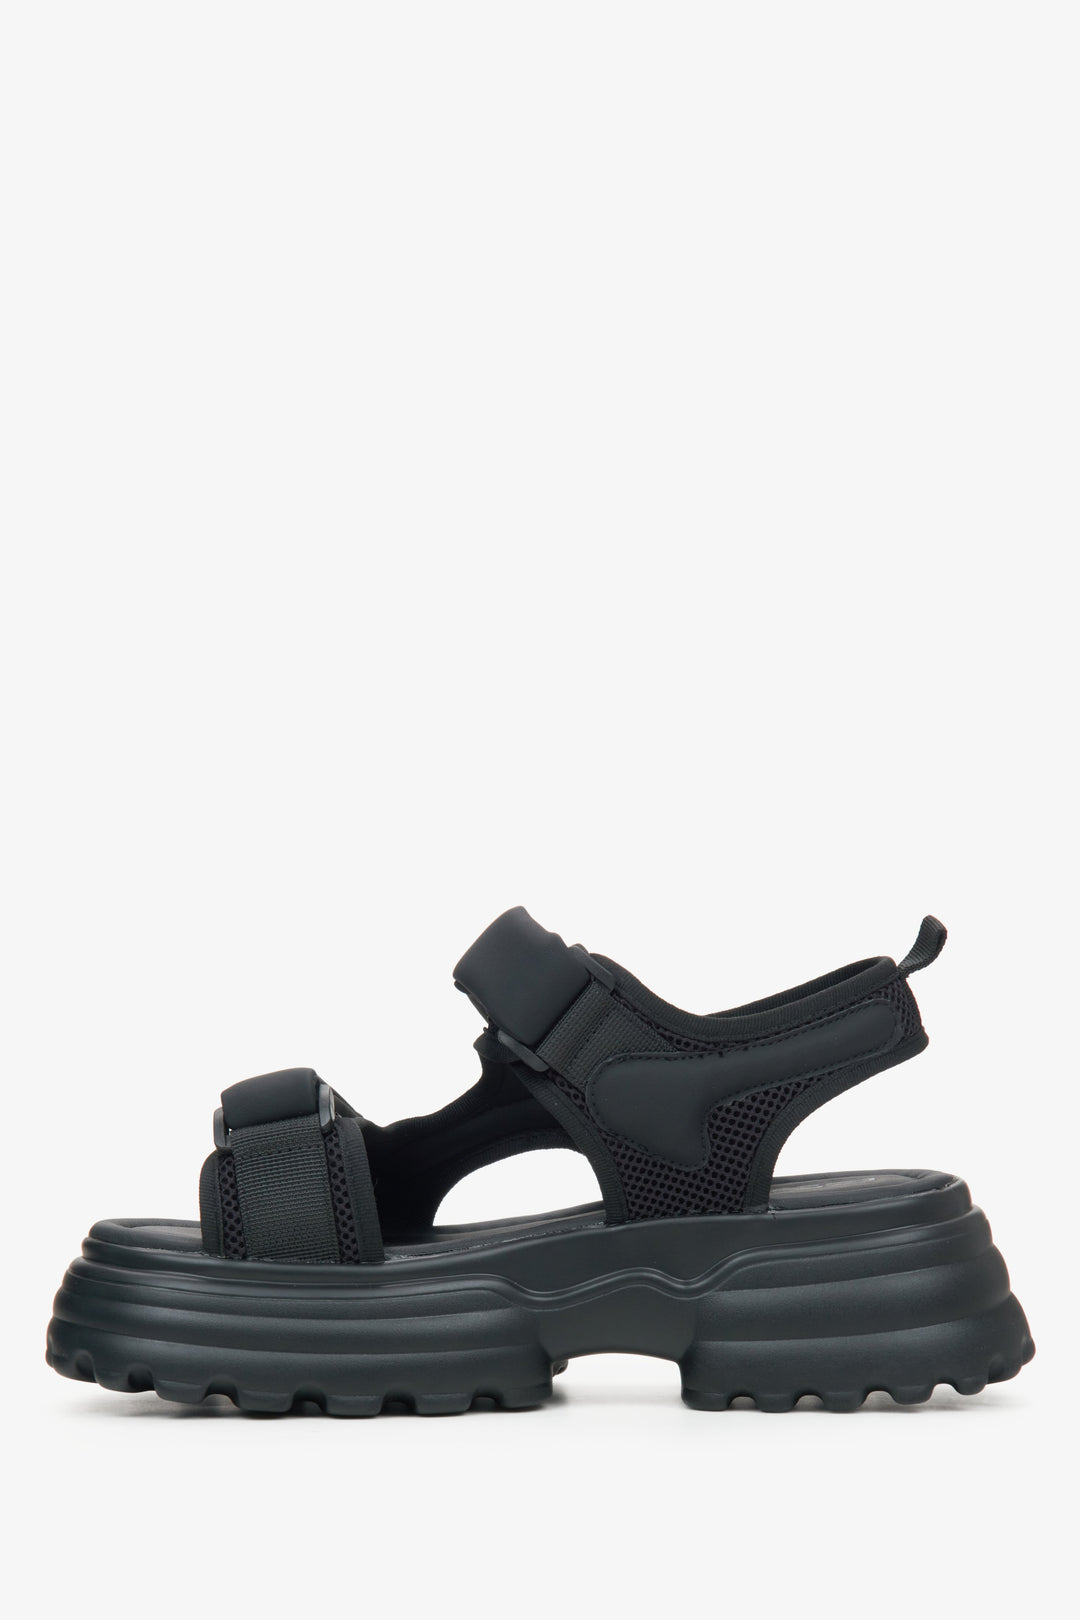 Sportowe sandały damskie ES8 w kolorze czarnym - profil buta.